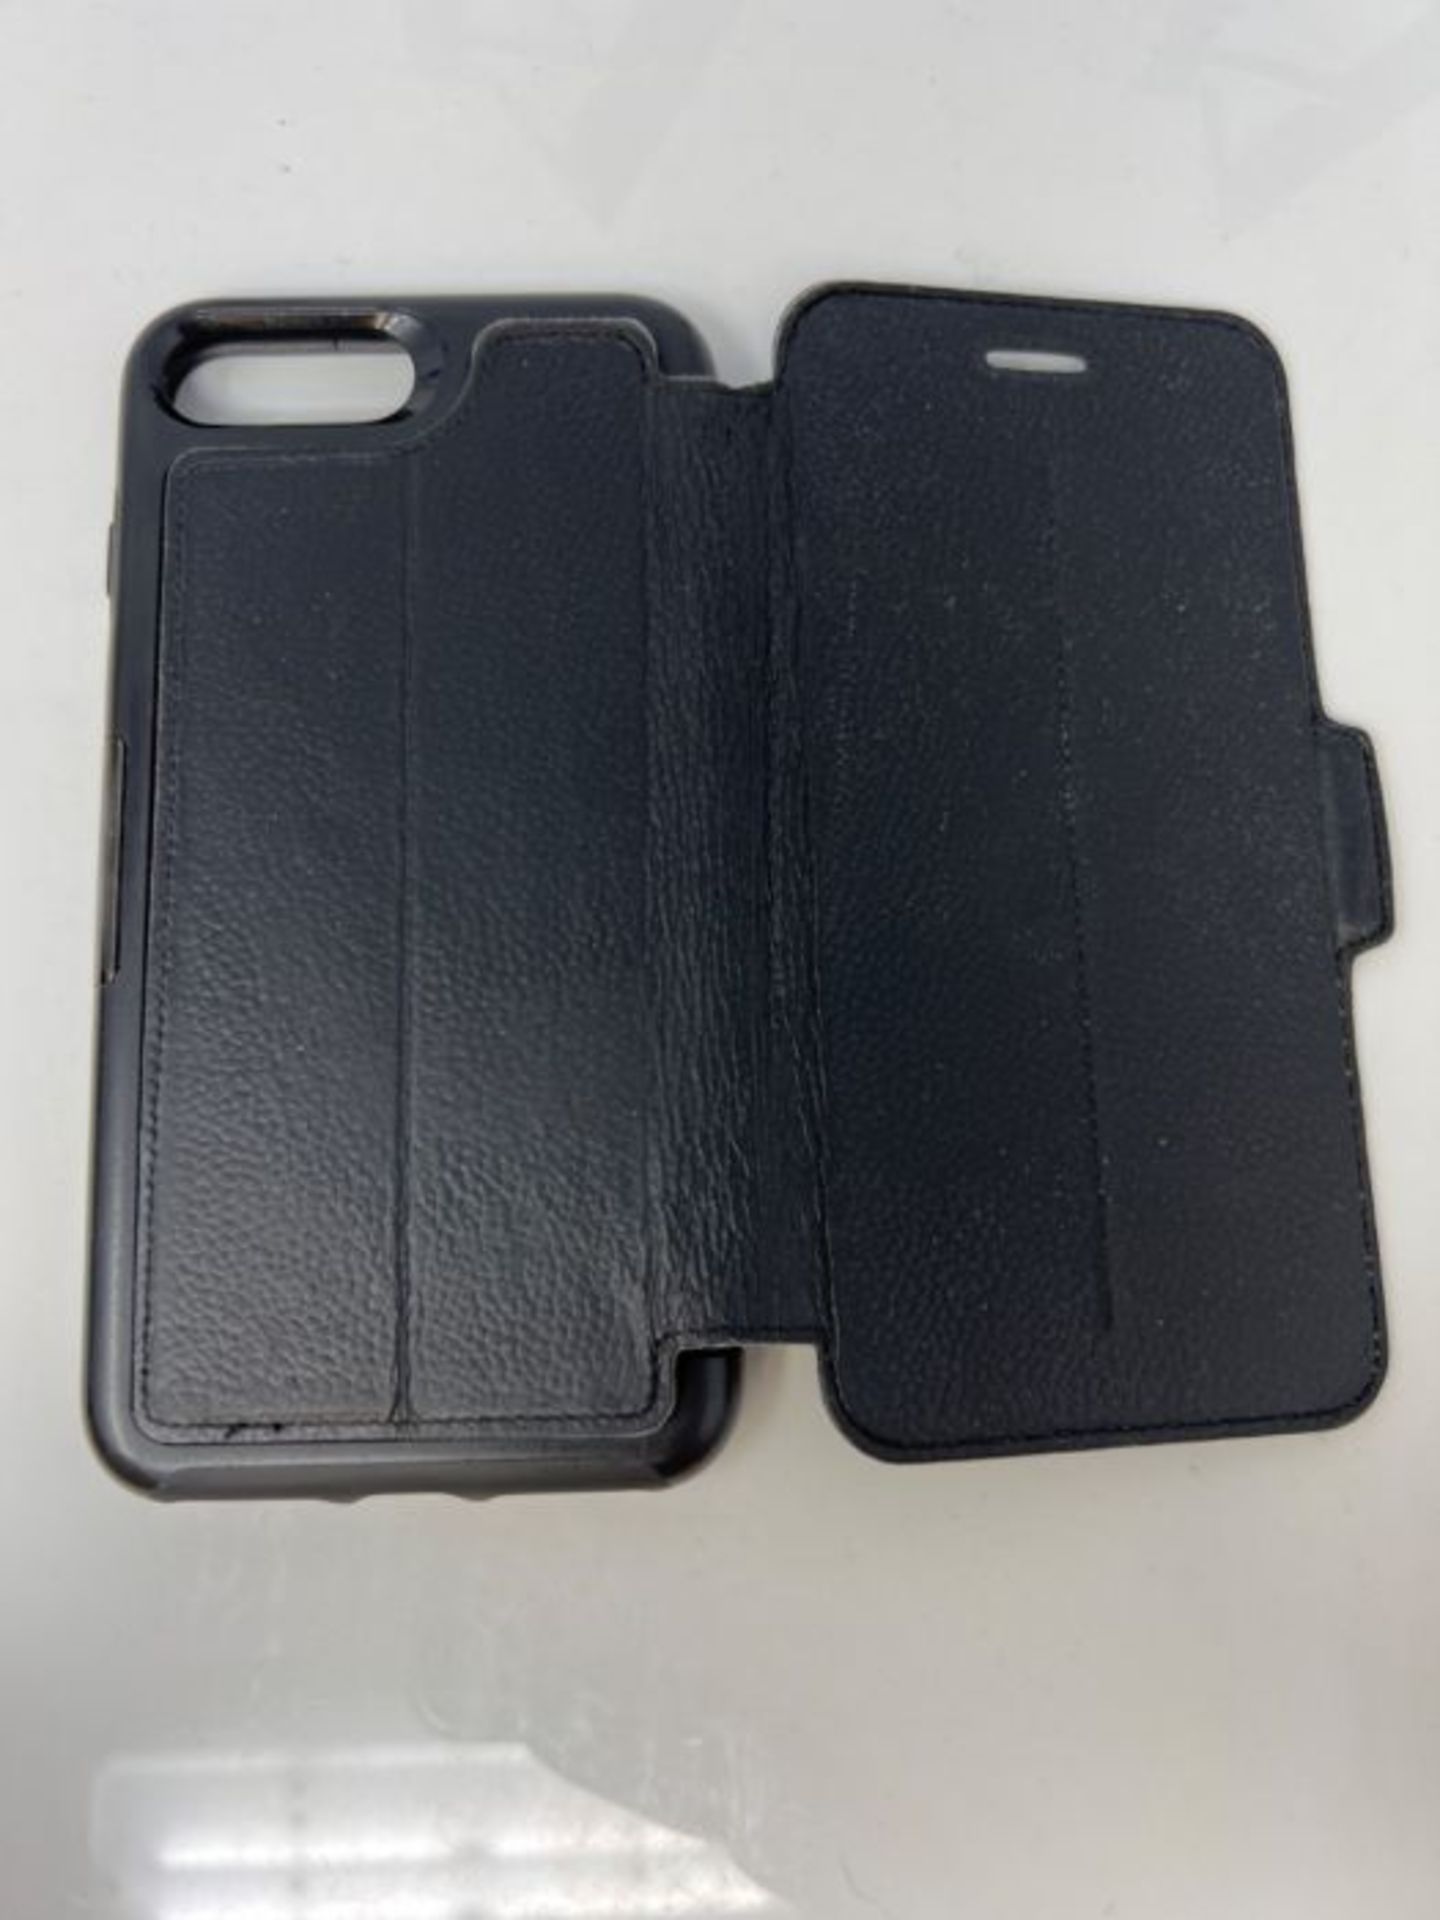 OtterBox Strada Series Premium Leather Folio Case for iPhone 7 Plus/8 Plus - Black - Image 2 of 2